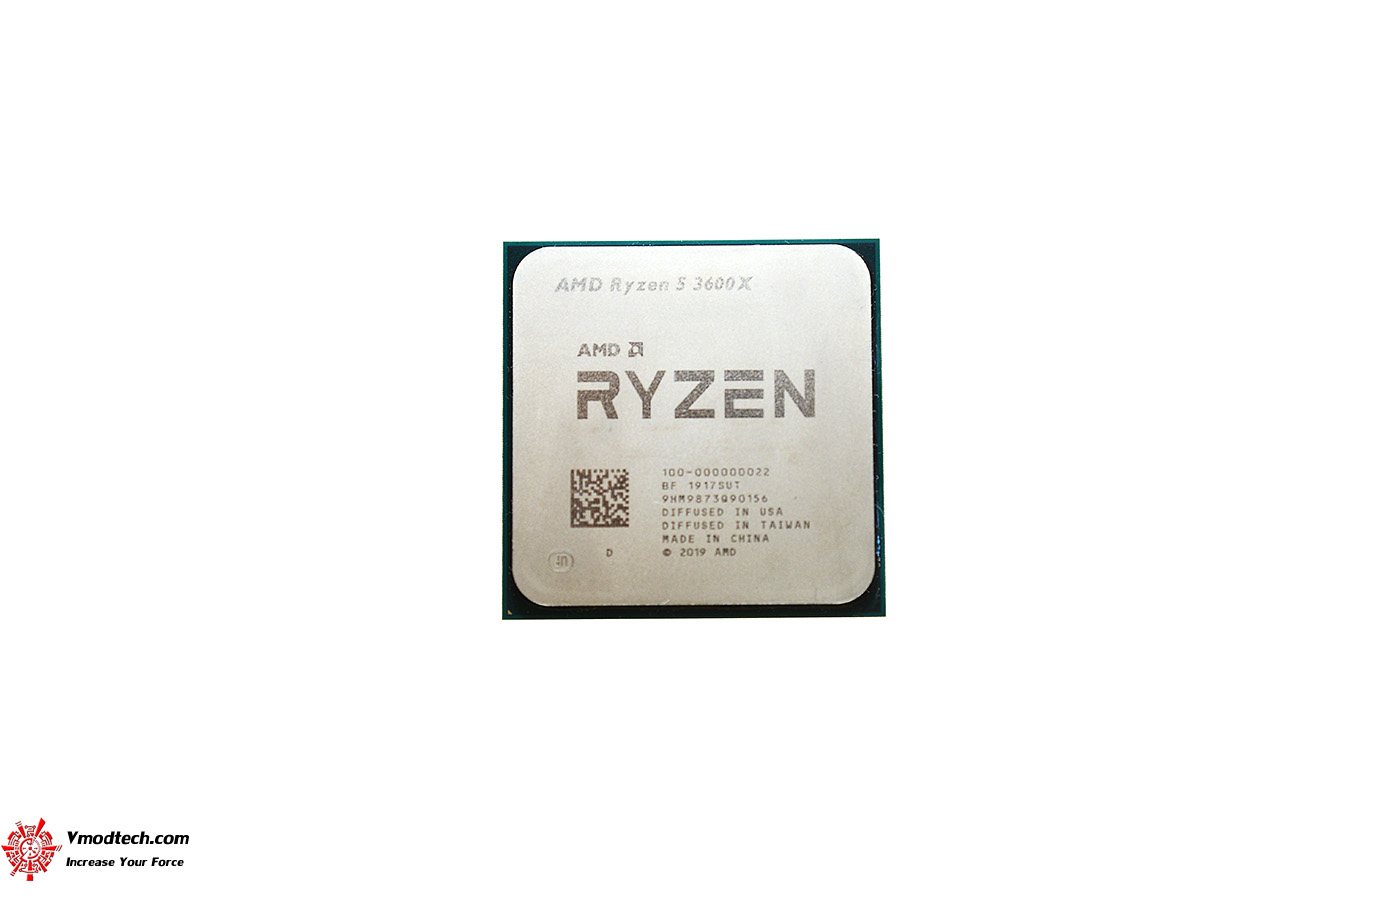 dsc 59321 AMD RYZEN 5 3600X PROCESSOR REVIEW 